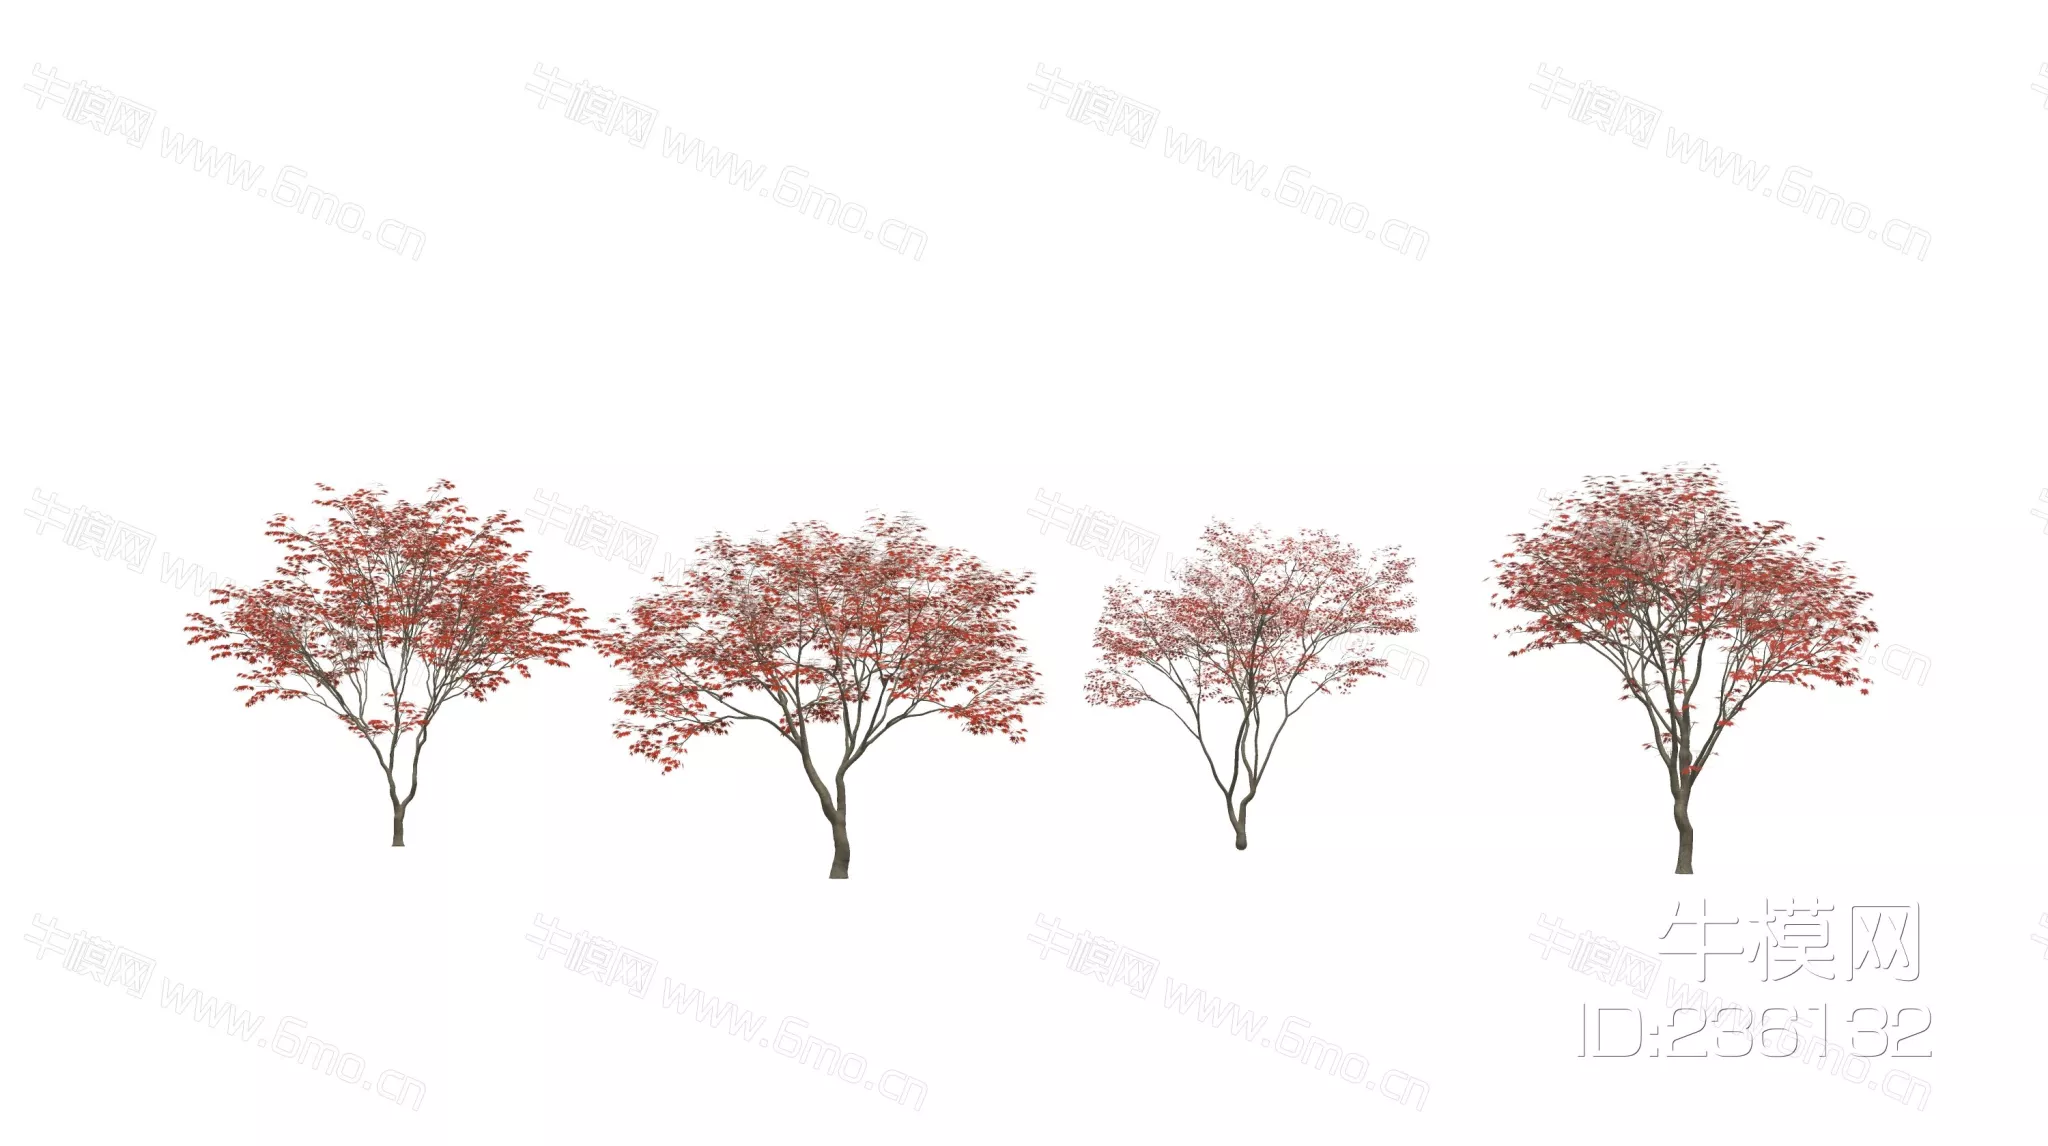 JAPANESE TREE - SKETCHUP 3D MODEL - ENSCAPE - 236132